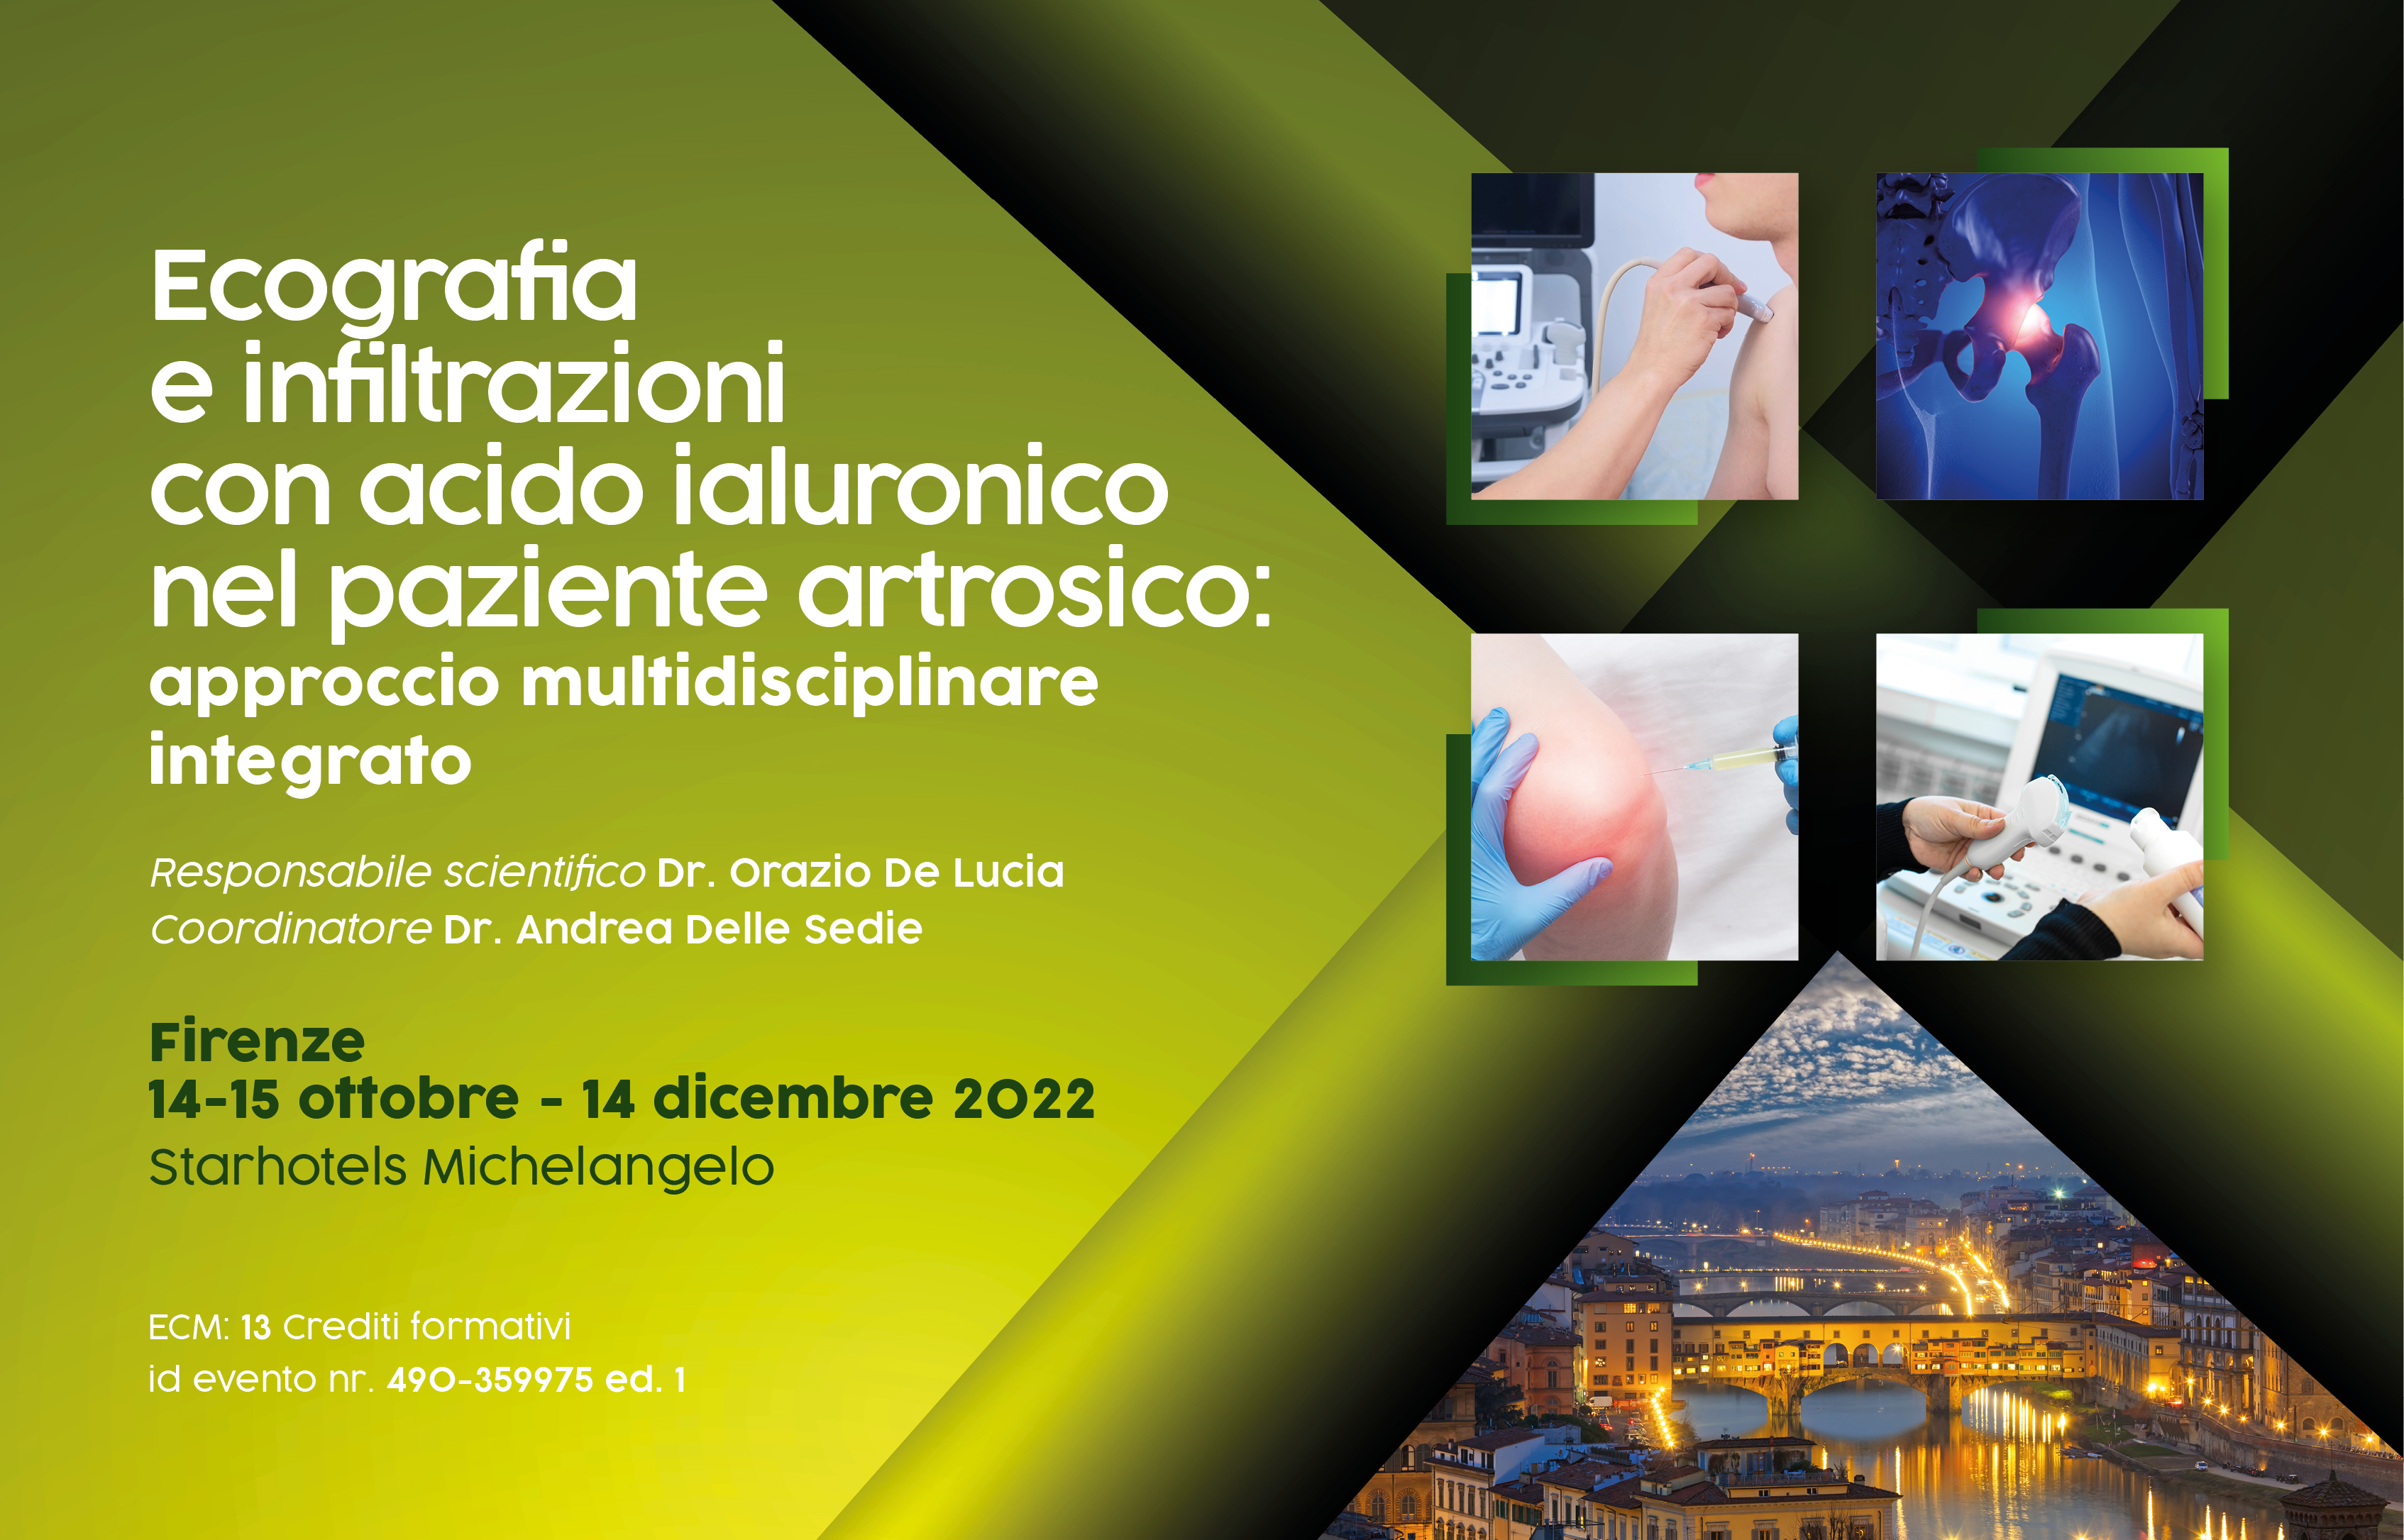 Course Image Ecografia e infiltrazioni con acido ialuronico nel paziente artrosico: approccio multidisciplinare integrato